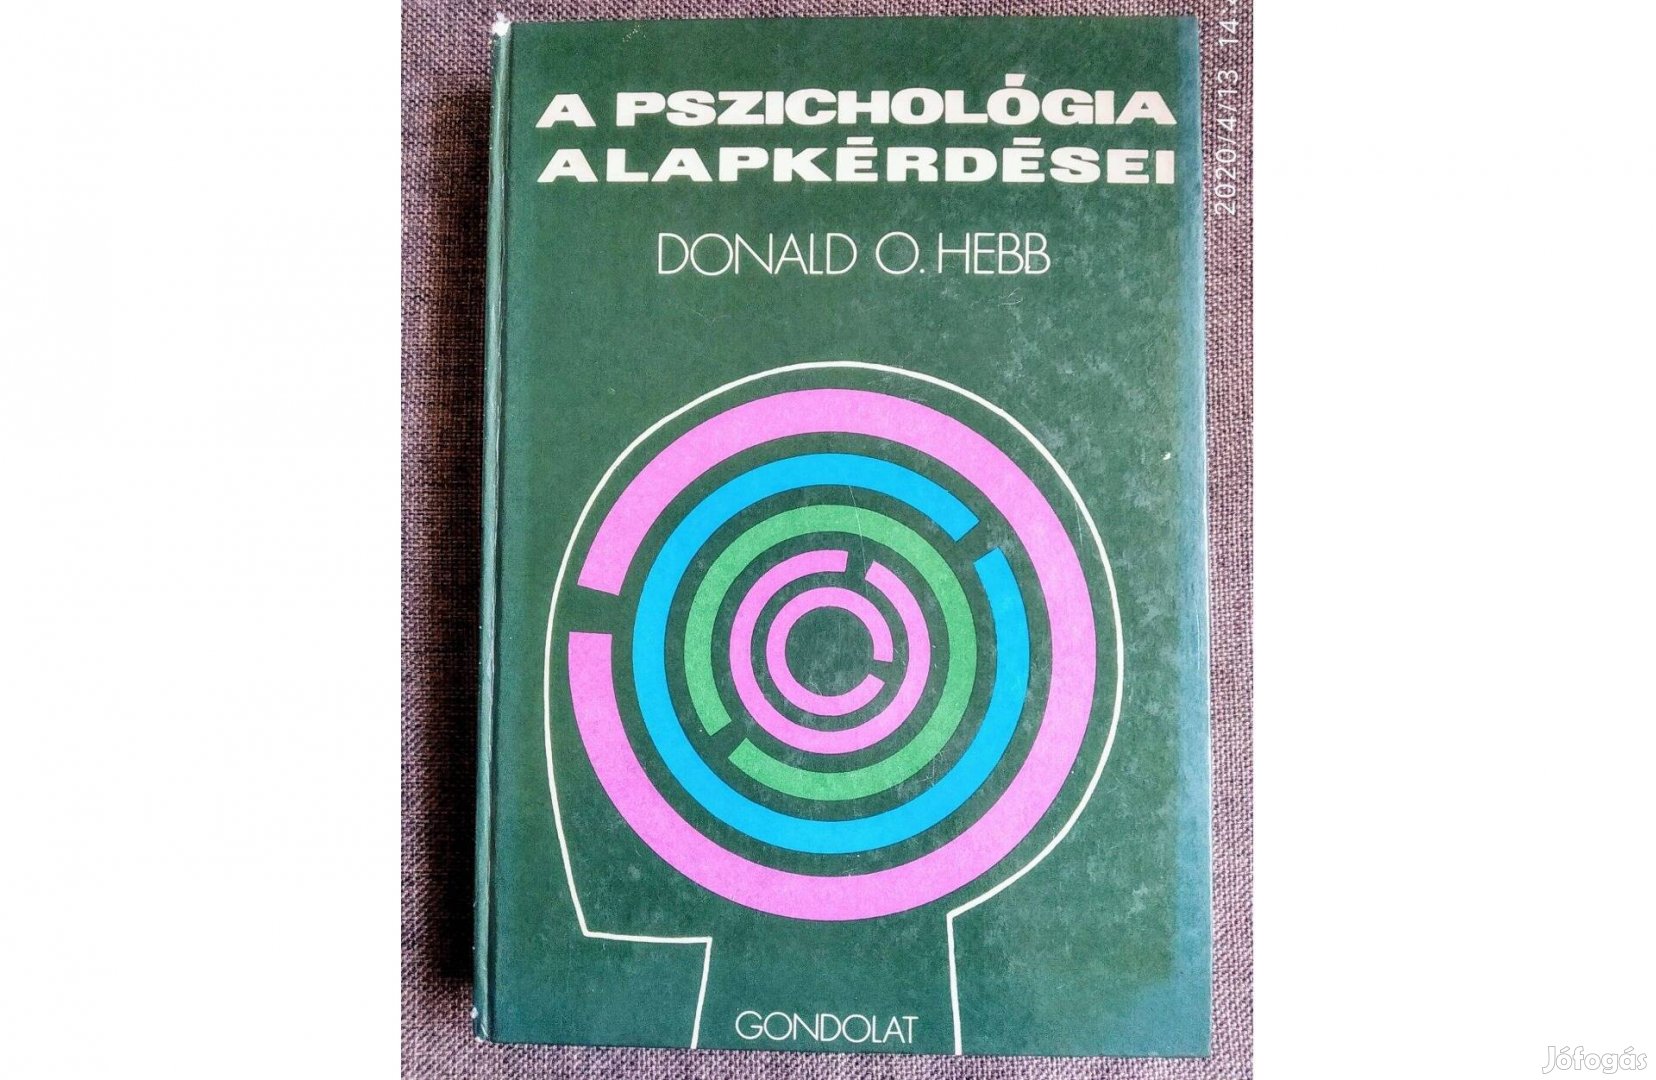 Donald O. Hebb A pszichológia alapkérdései